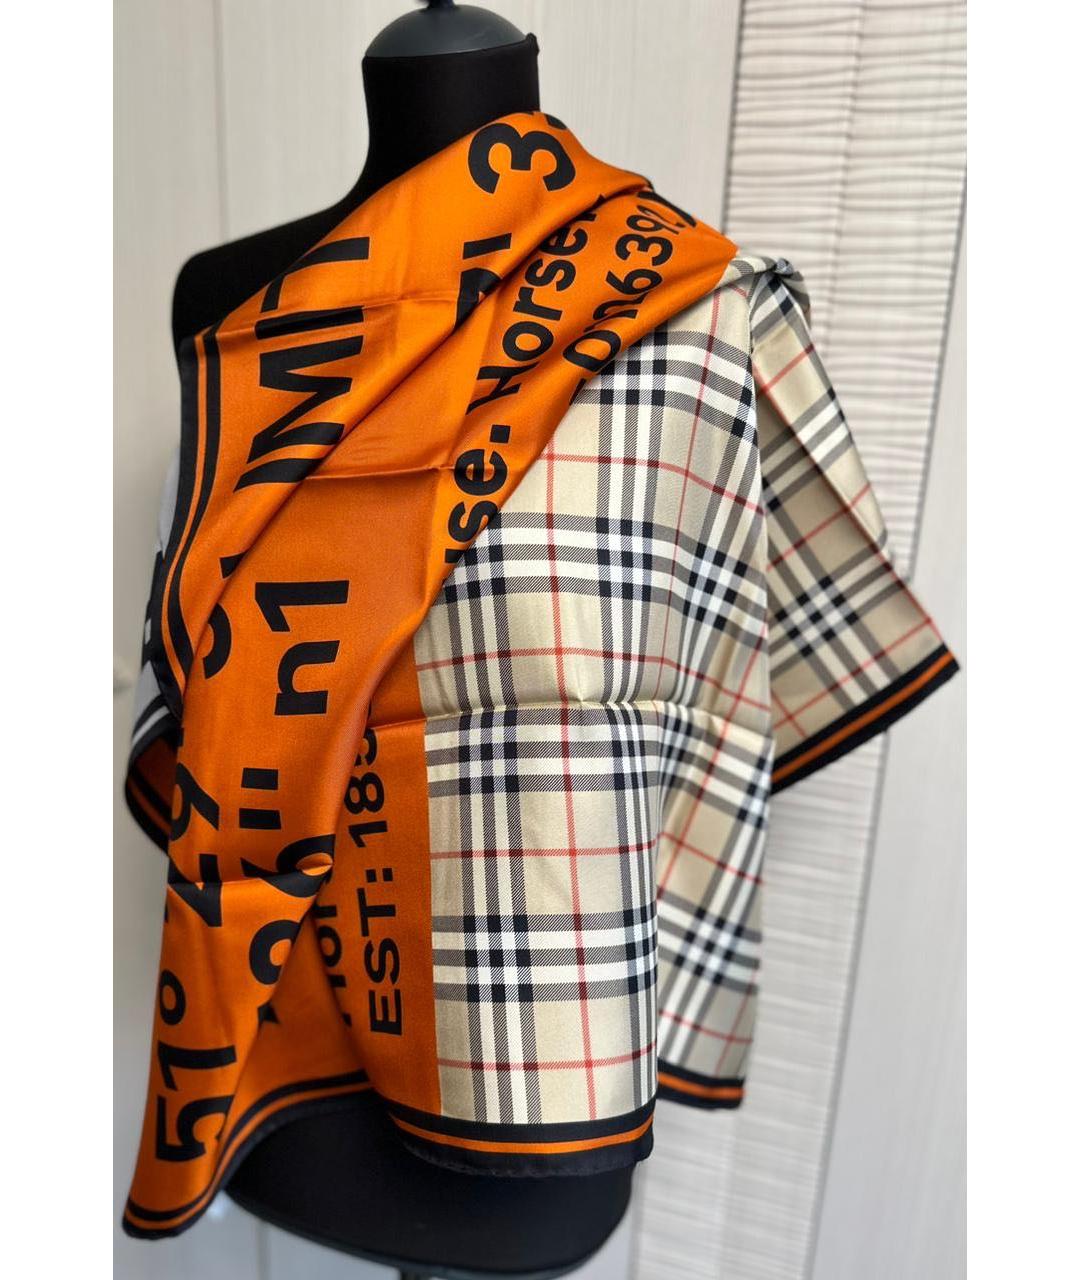 BURBERRY Оранжевый шелковый платок, фото 6